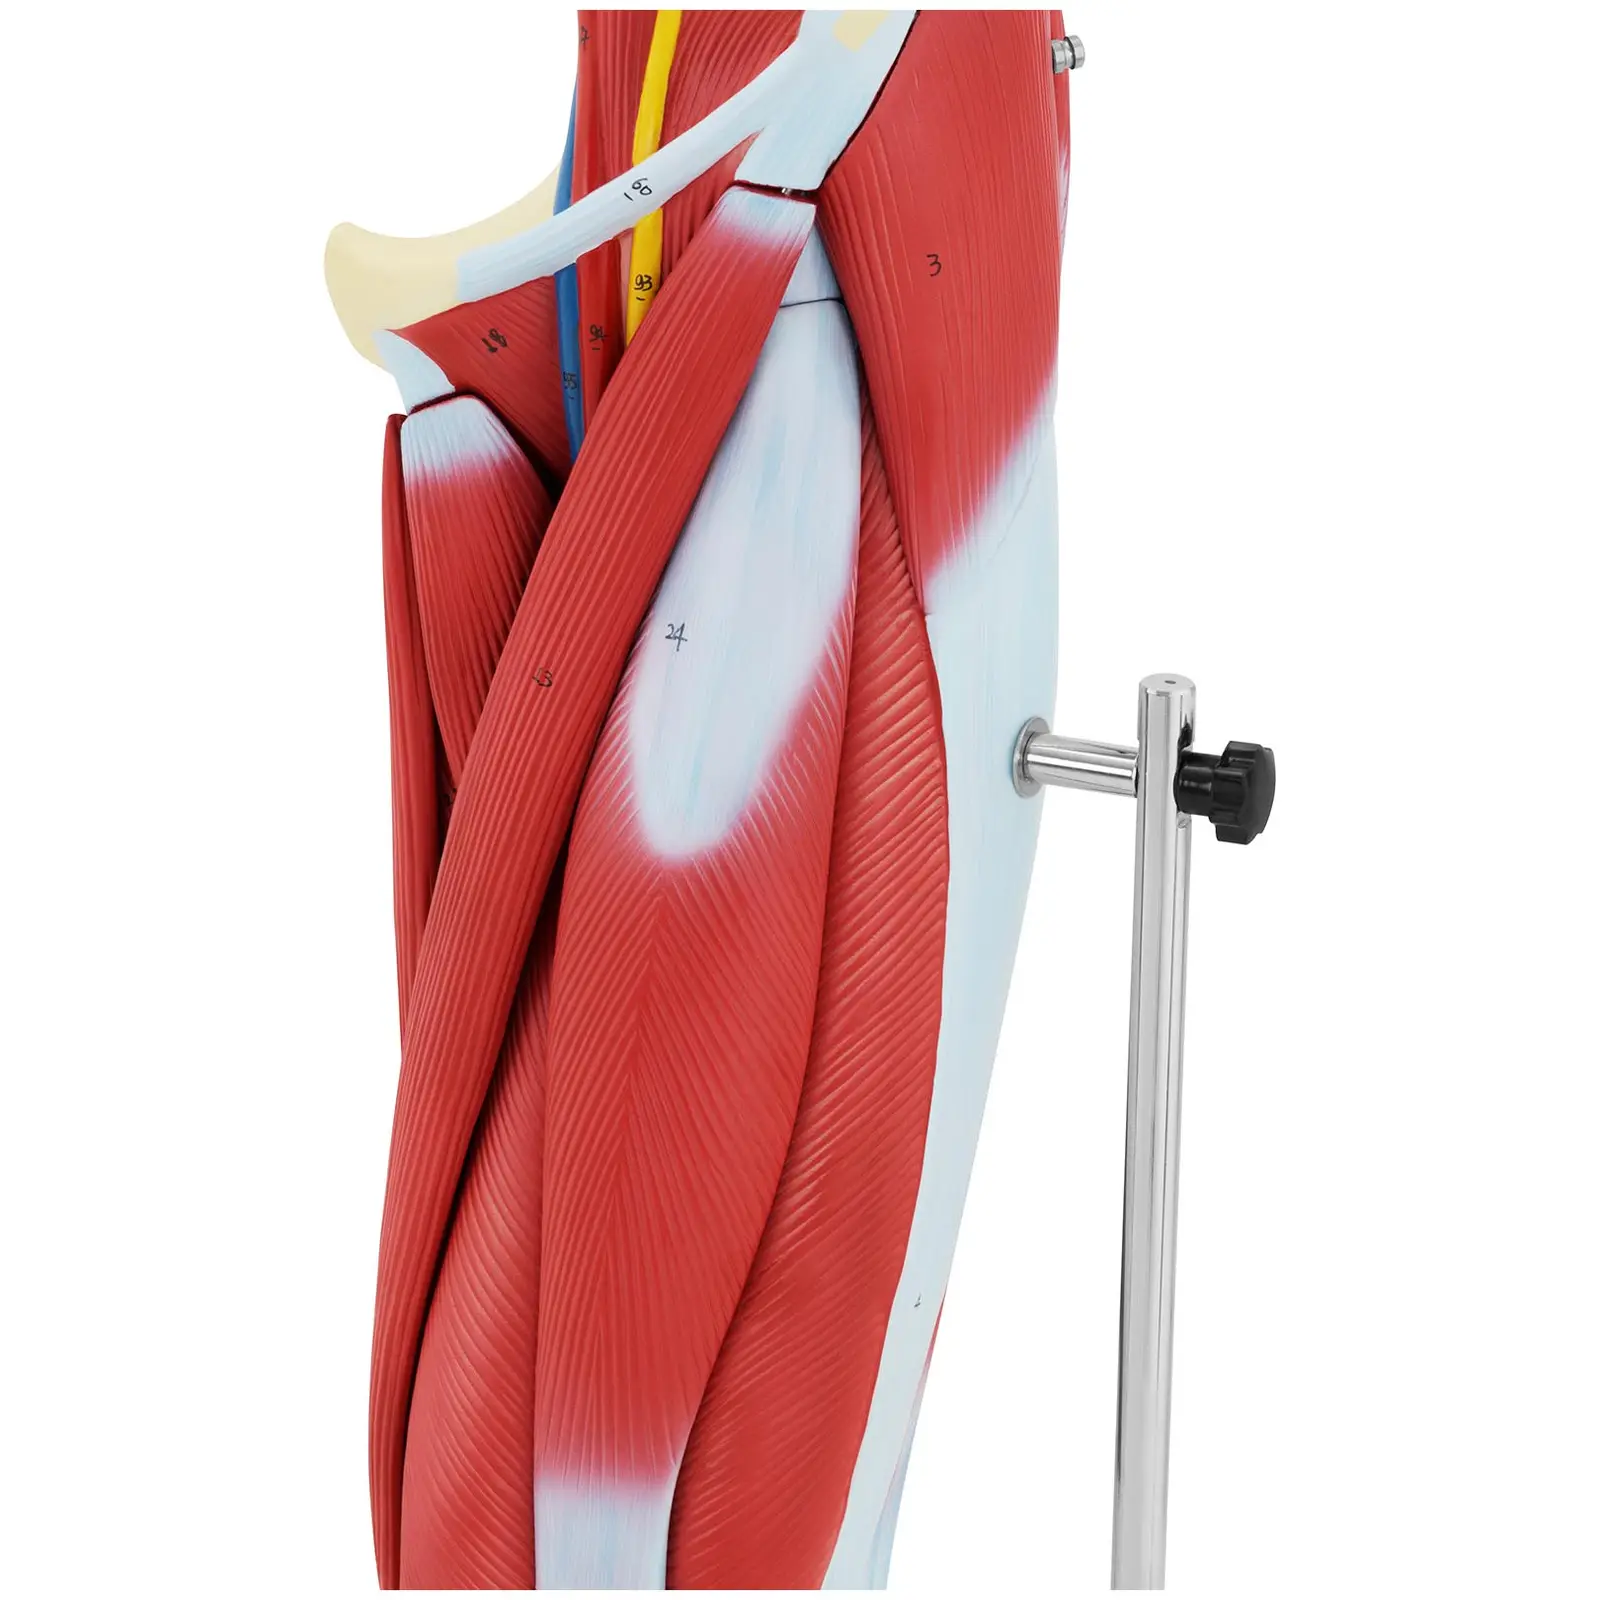 Maquette anatomique des muscles de la jambe - En couleurs